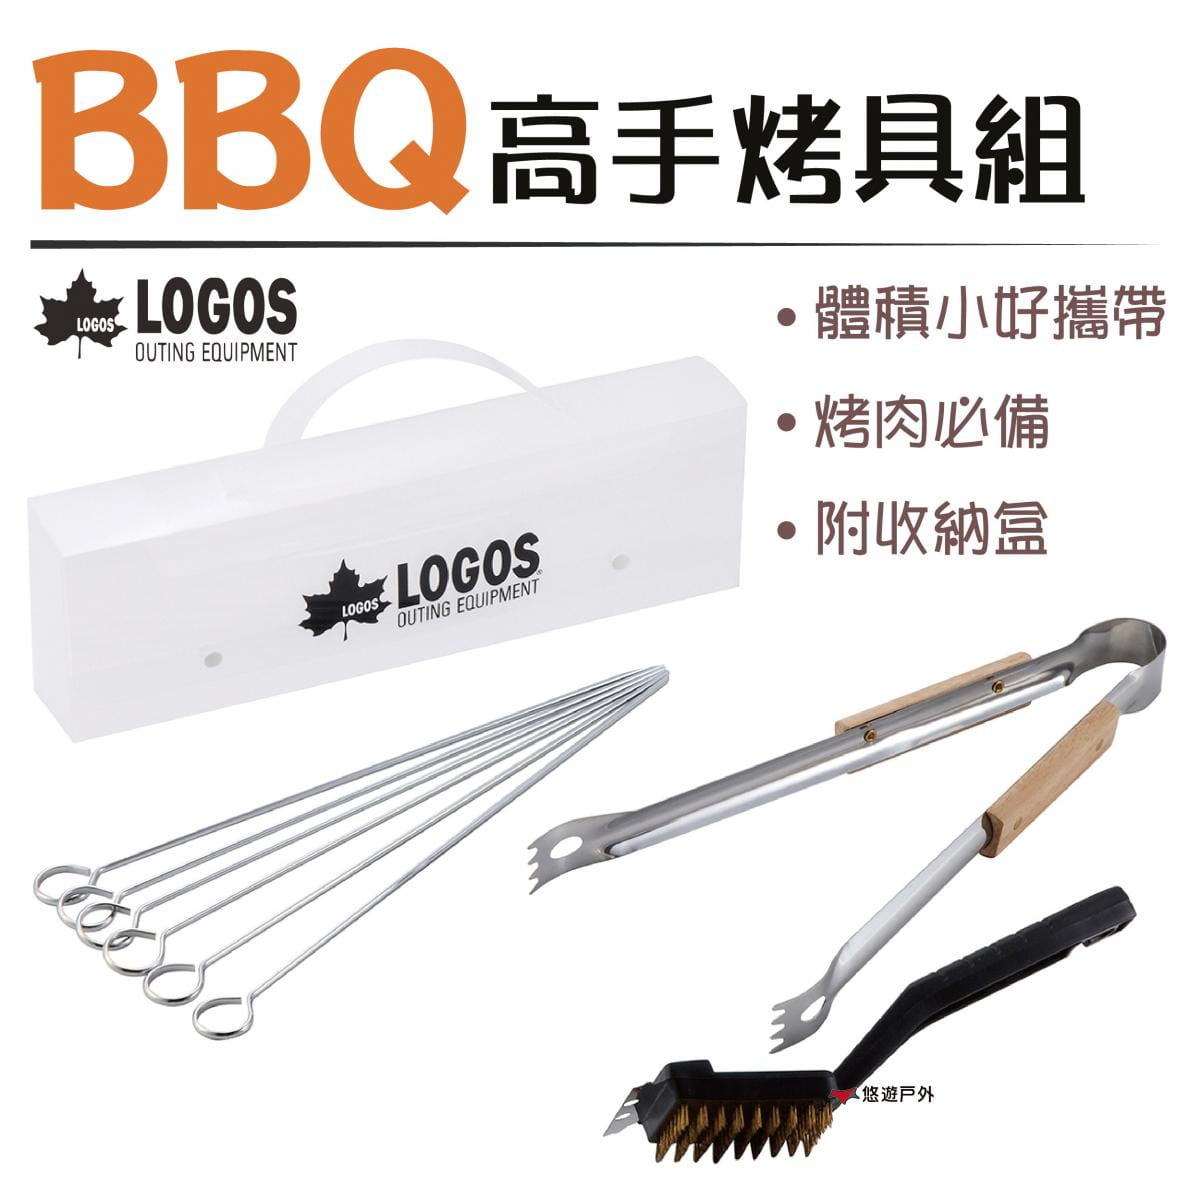 【日本LOGOS】BBQ高手烤具組附盒 LG81331001 0